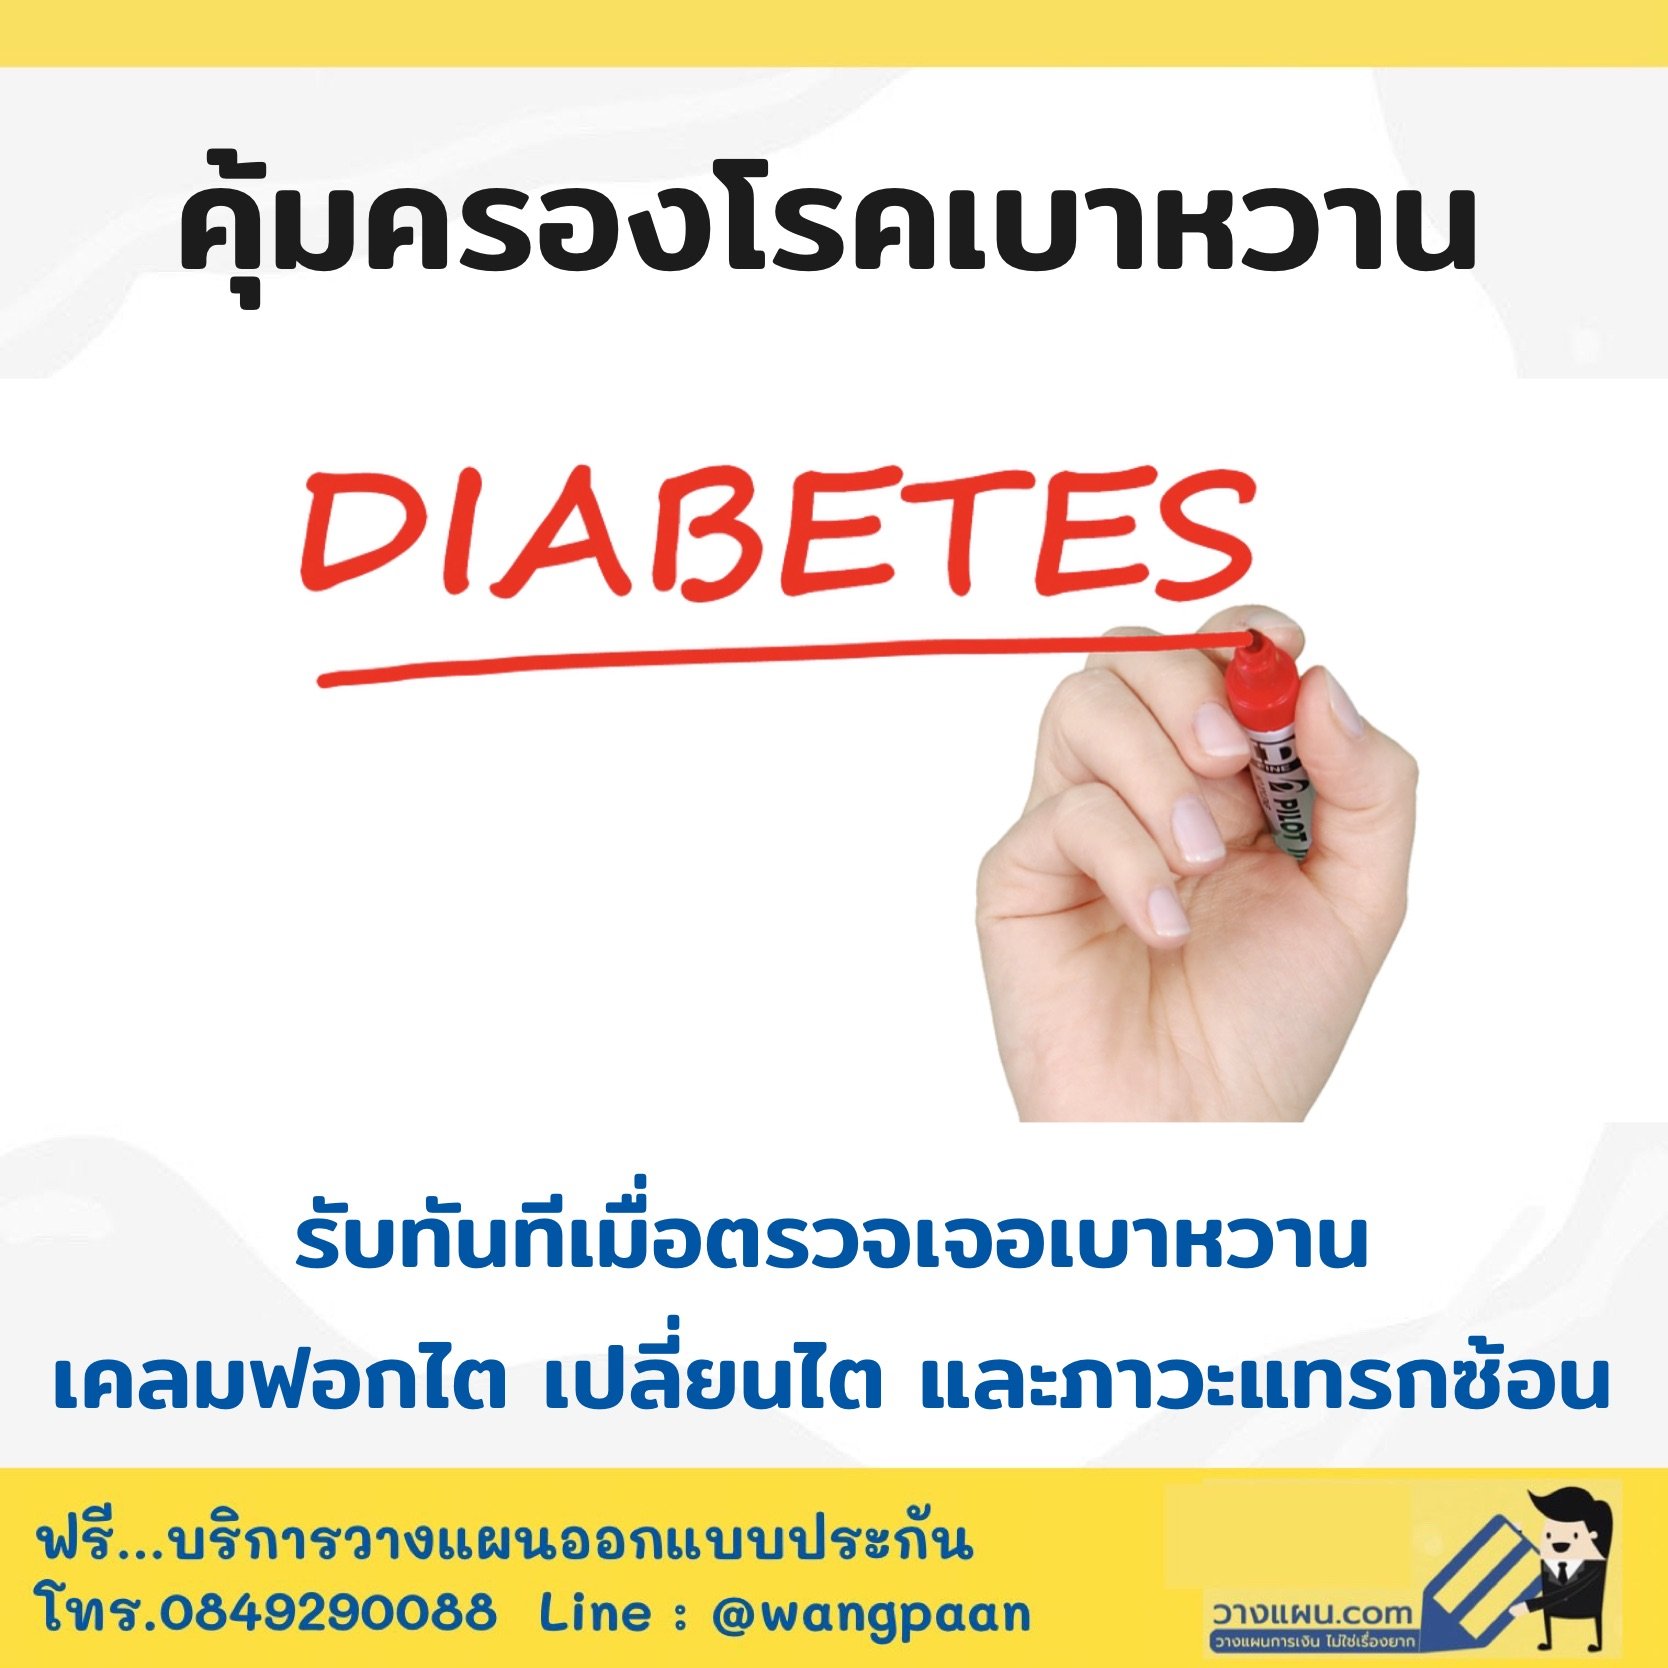 ประกันคุ้มครองโรคเบาหวาน คุ้มครองทั้งเริ่มเป็นโรคถึงเบาหวานลุกลาม